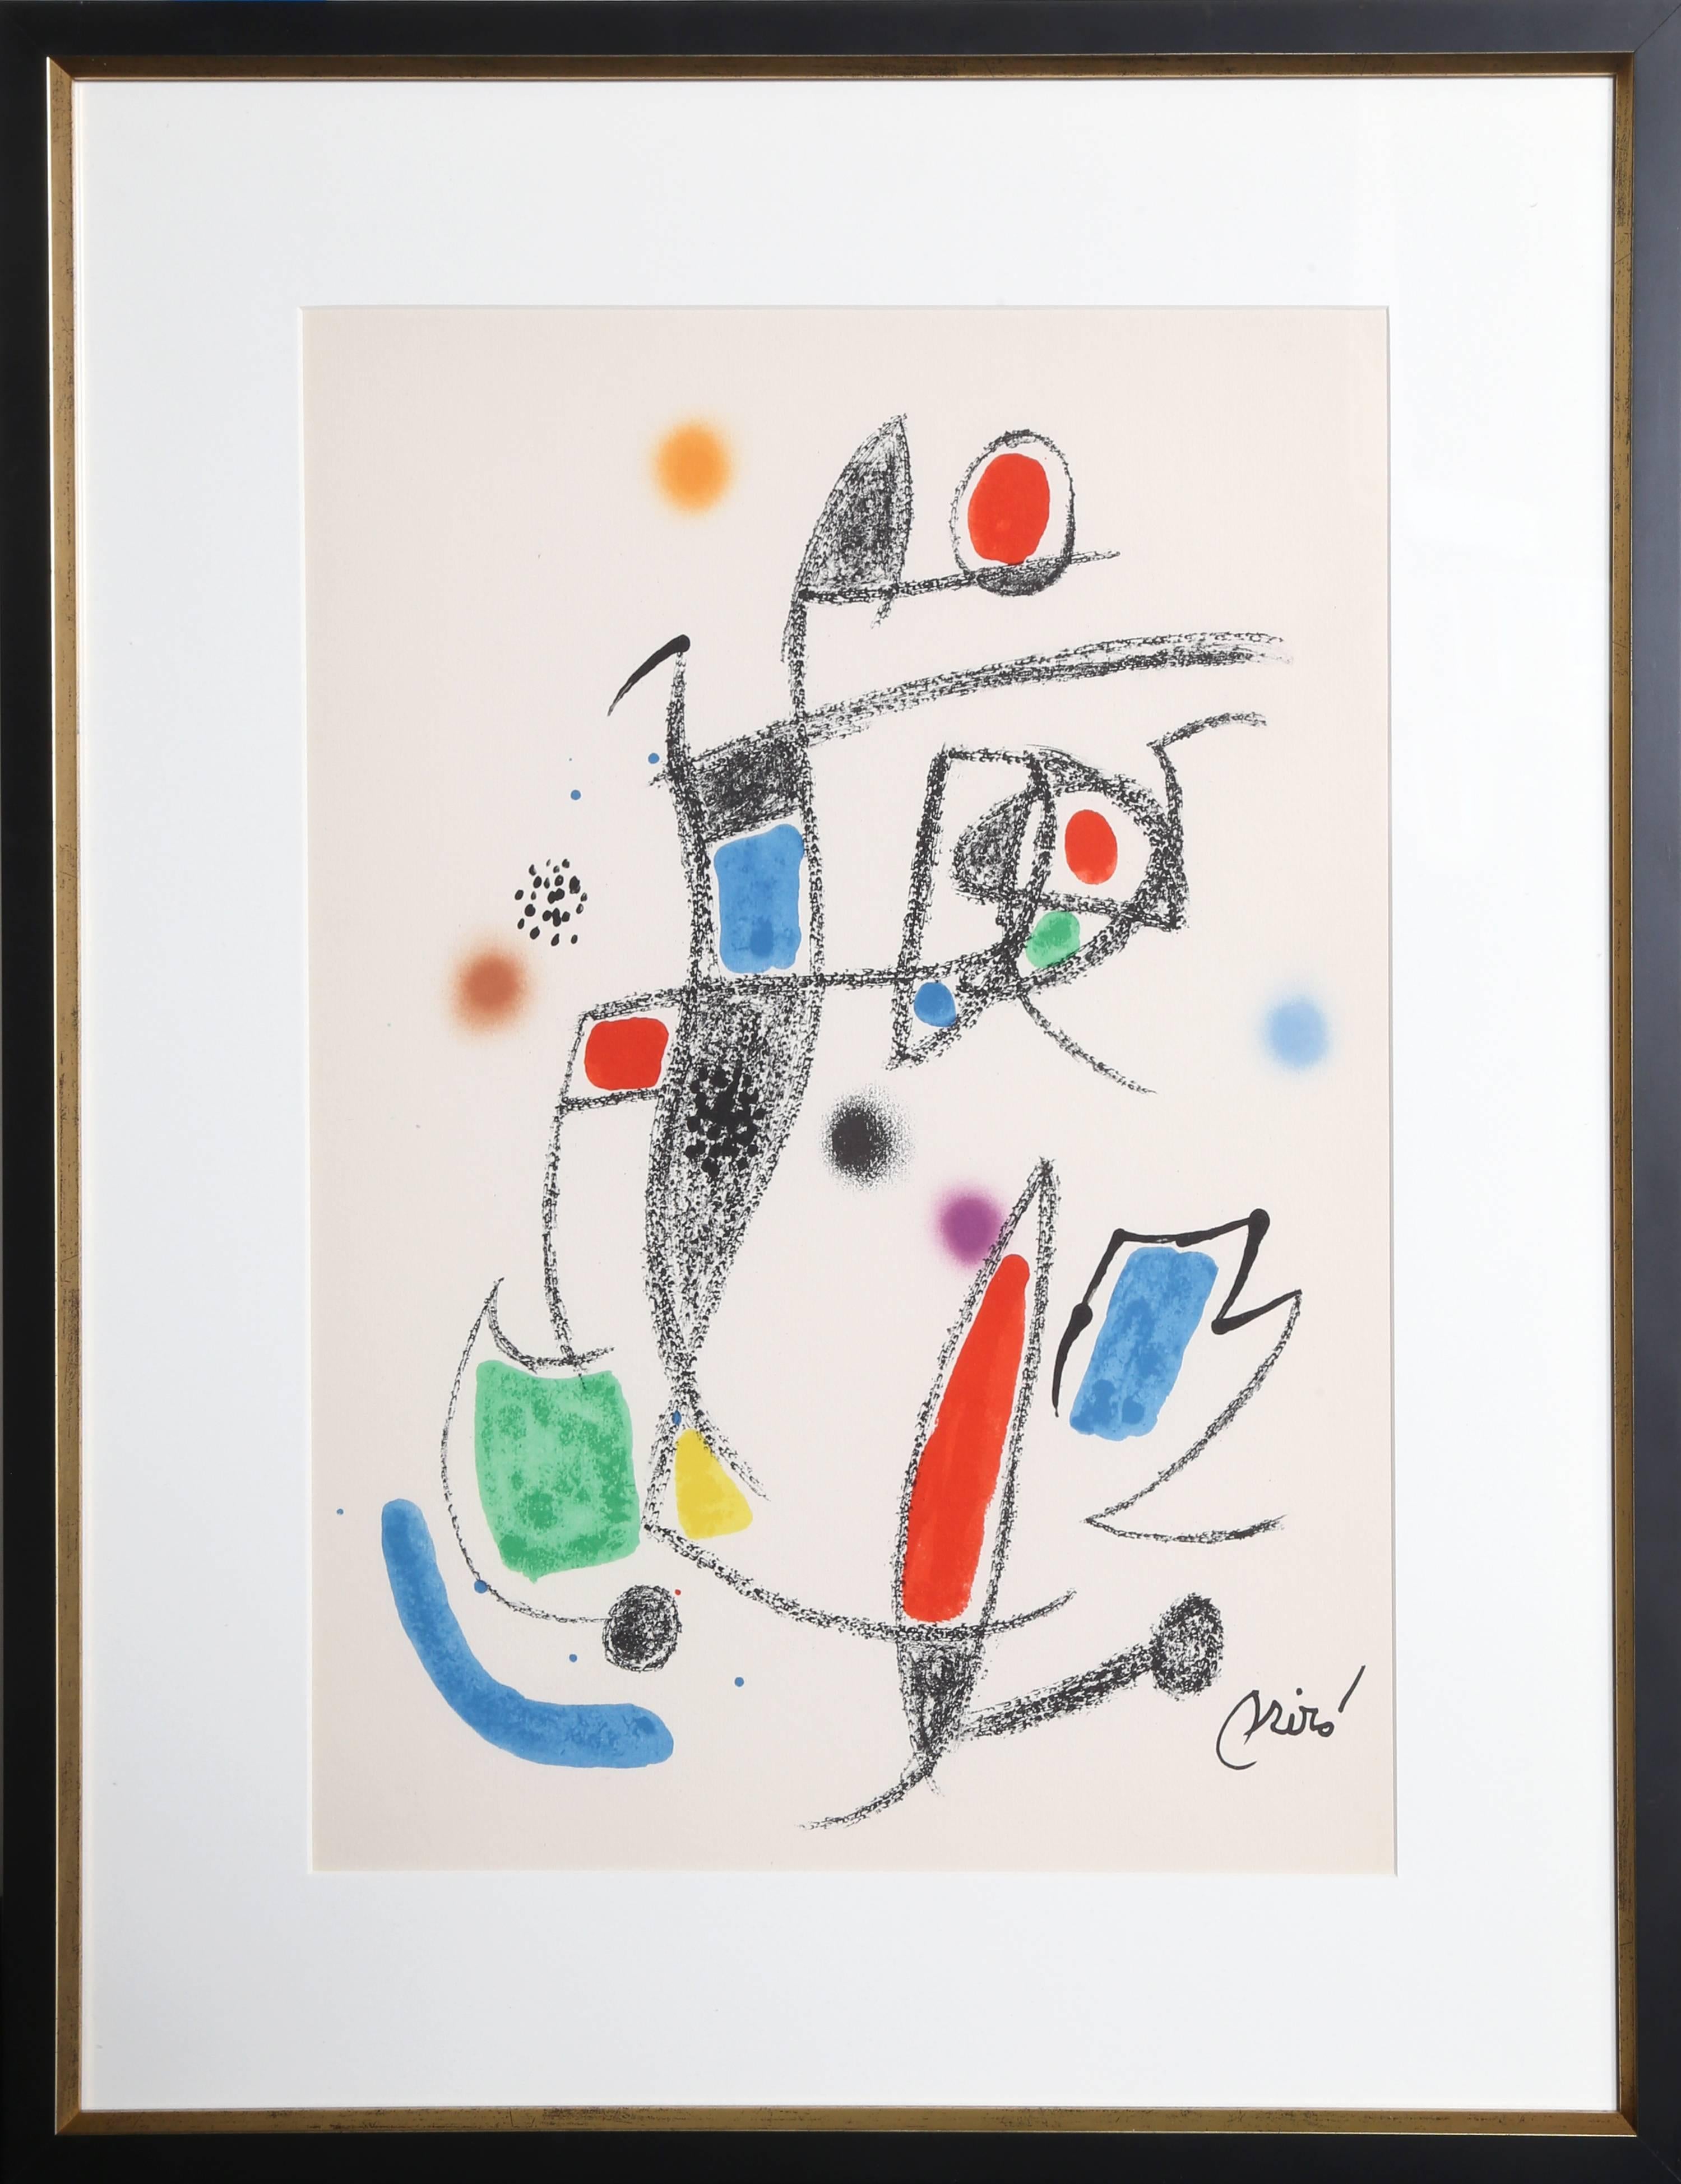 Abstract Print Joan Miró - Maravillas con Variaciones Acrosticas en le jardin de Miro (Number 12)